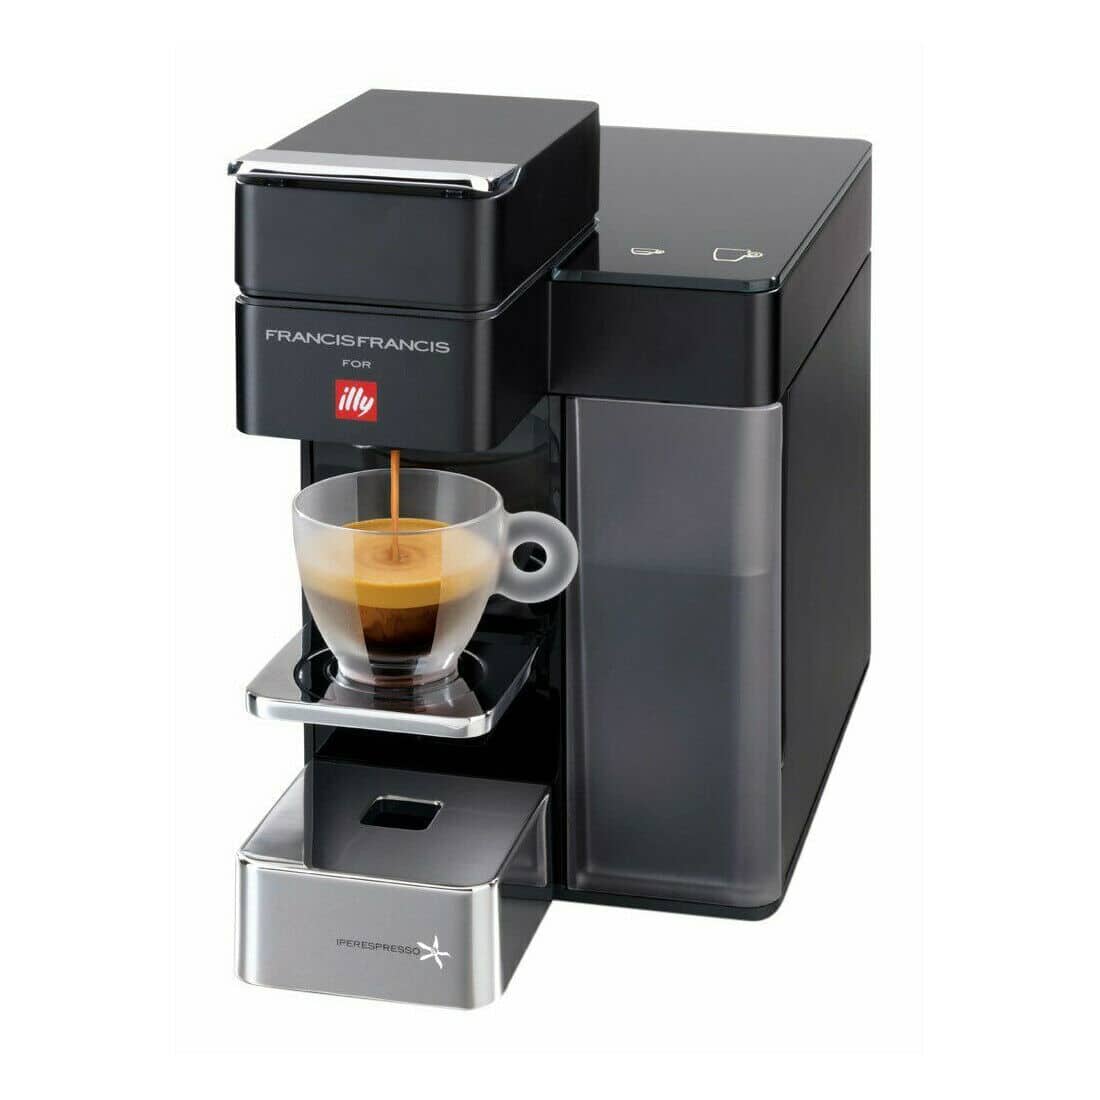 illy Macchina Caffè Y5 Iperespresso a Capsule Espresso Caffe 220V